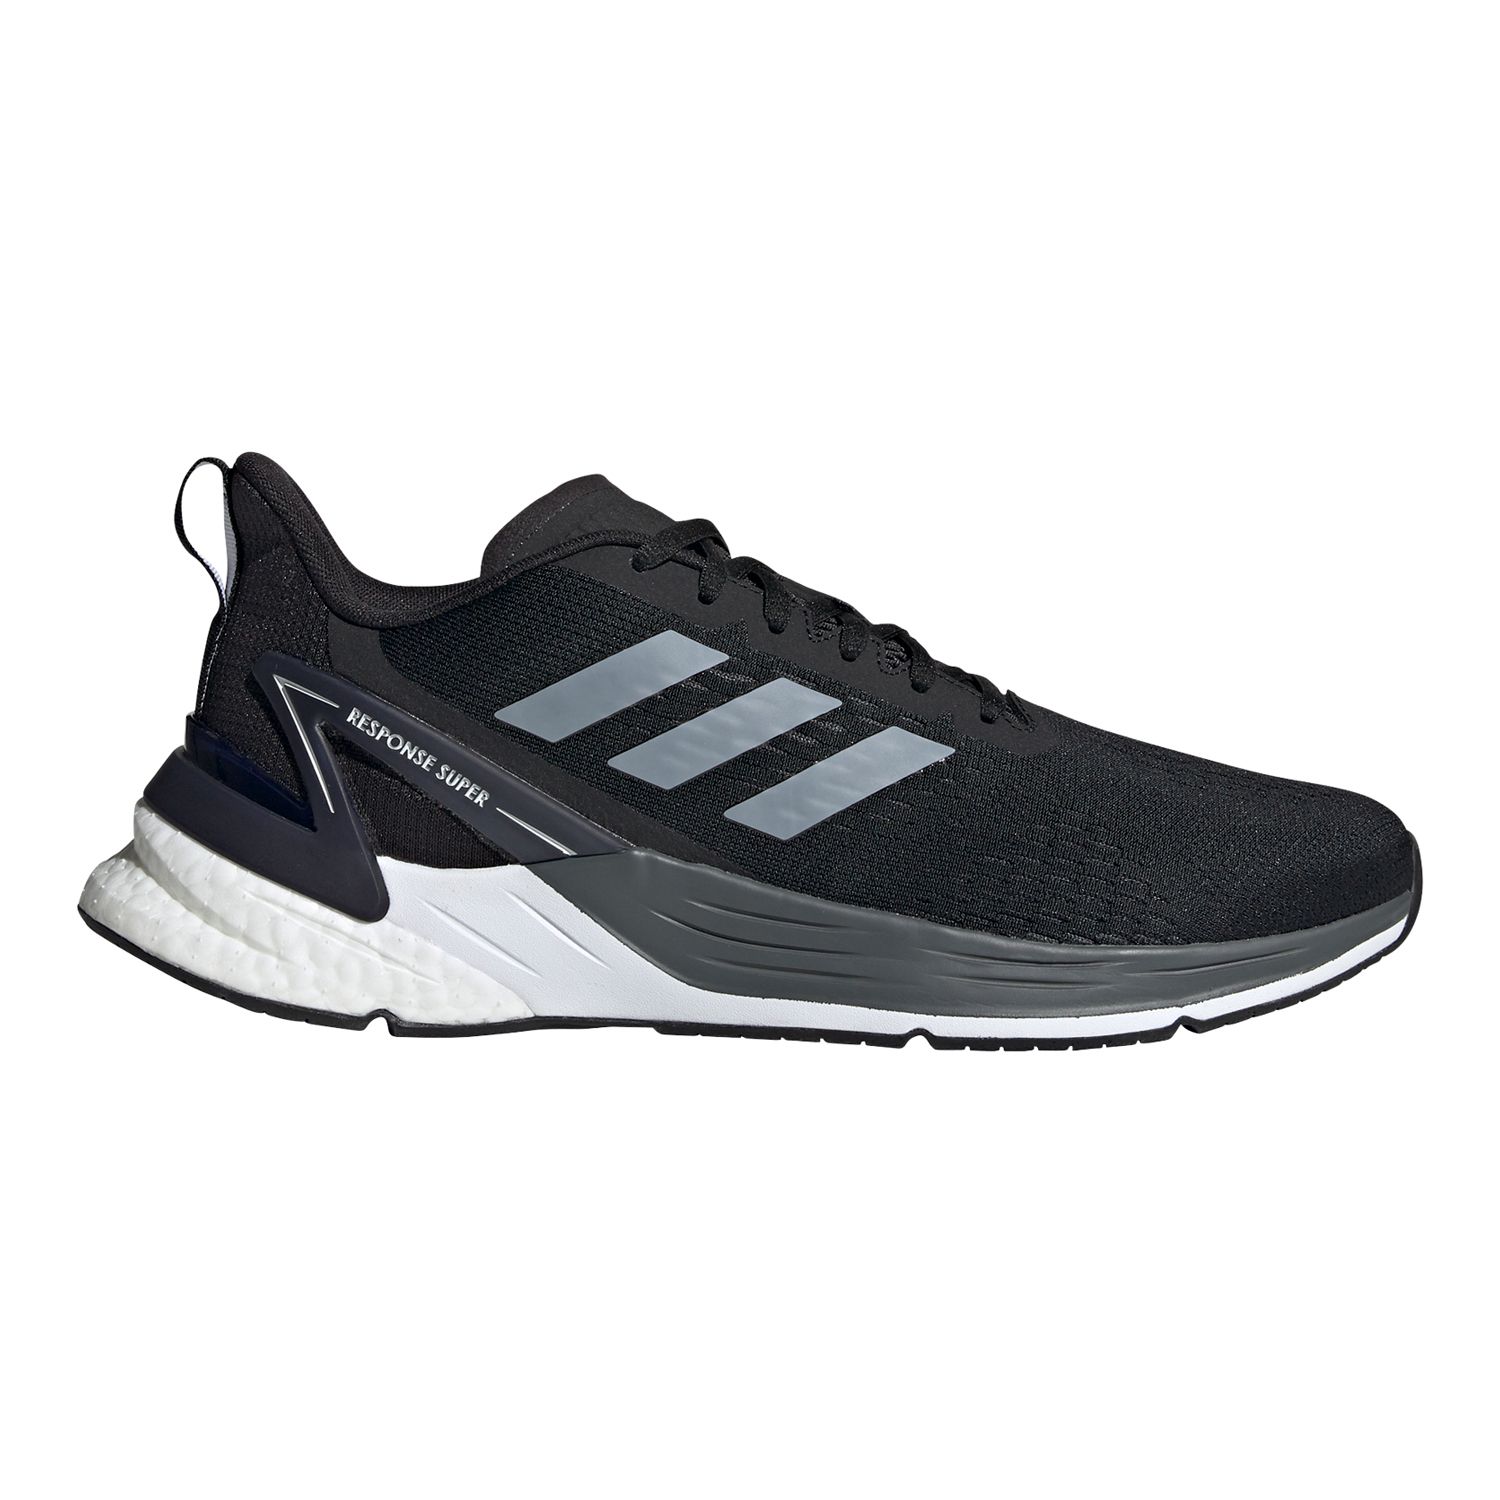 adidas basic running shoes